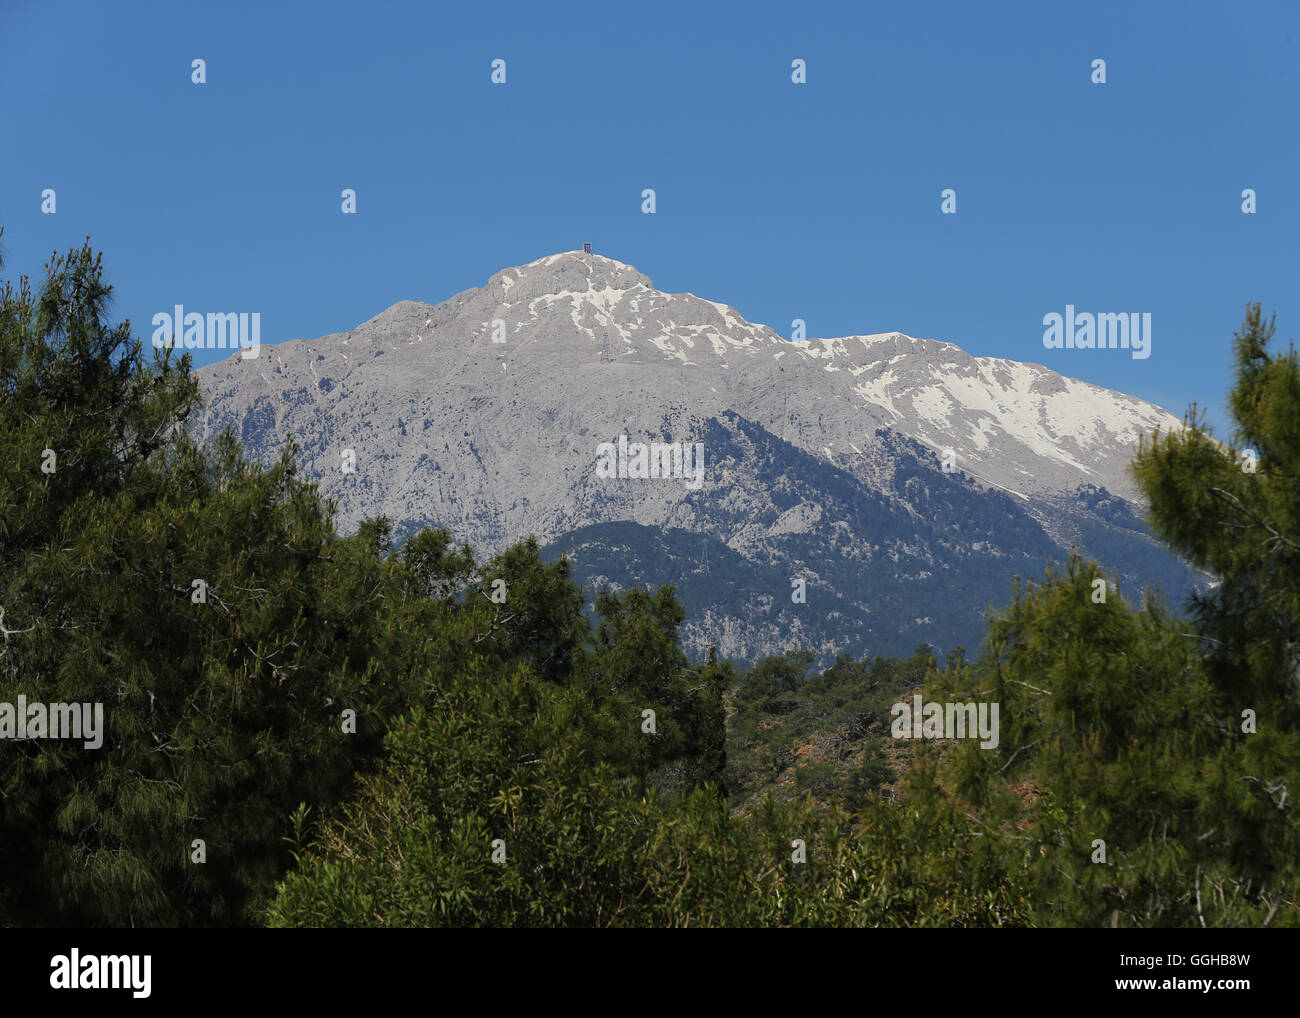 Mt.Tahtali (Olympus) ,Taurus Mountains near Kemer,Antalya,Turkey. Stock Photo